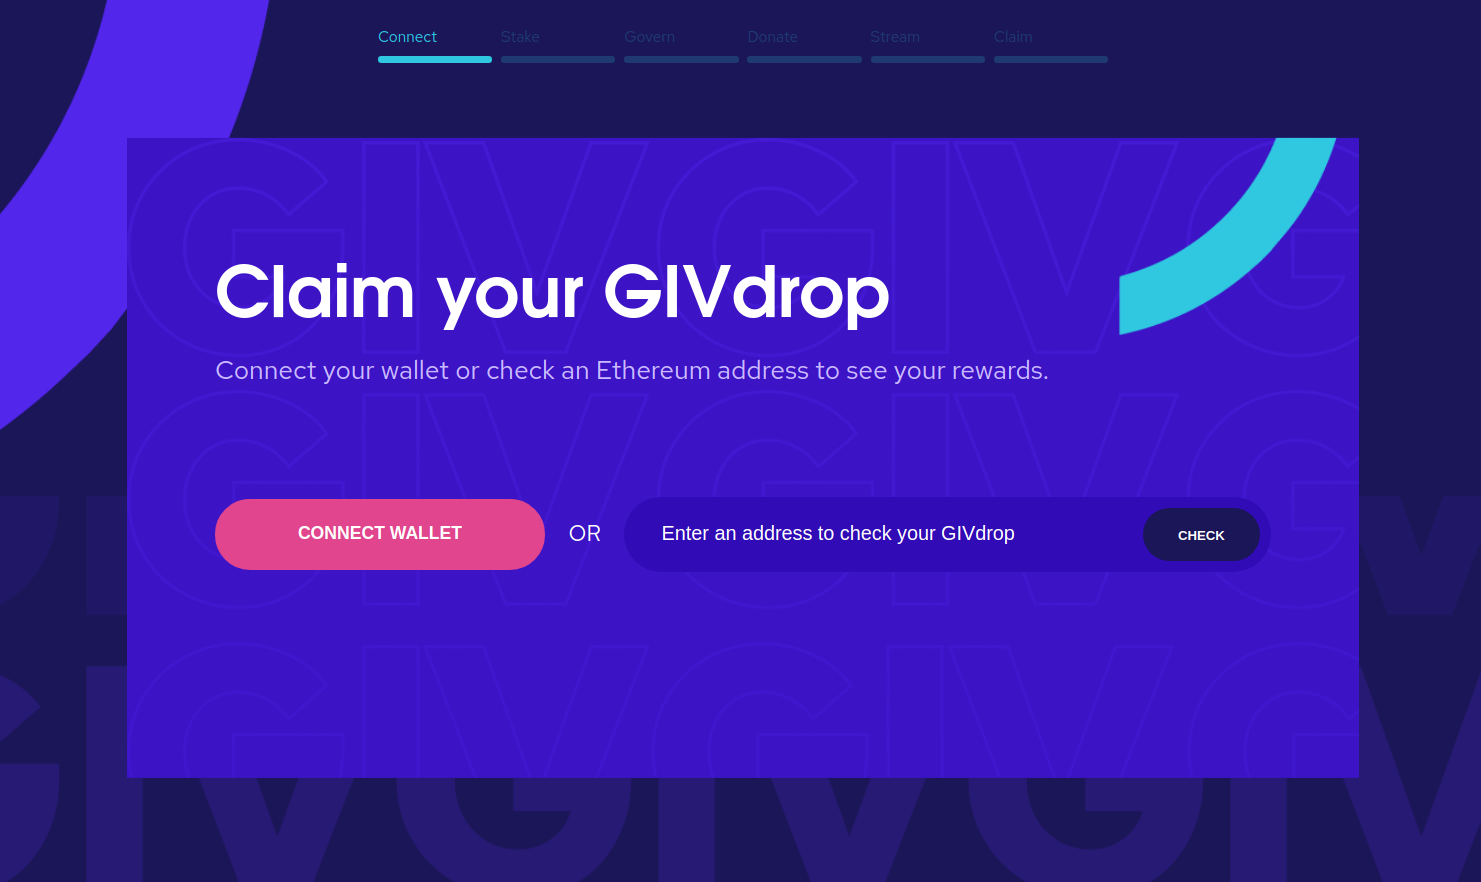 check GIVdrop eligibility